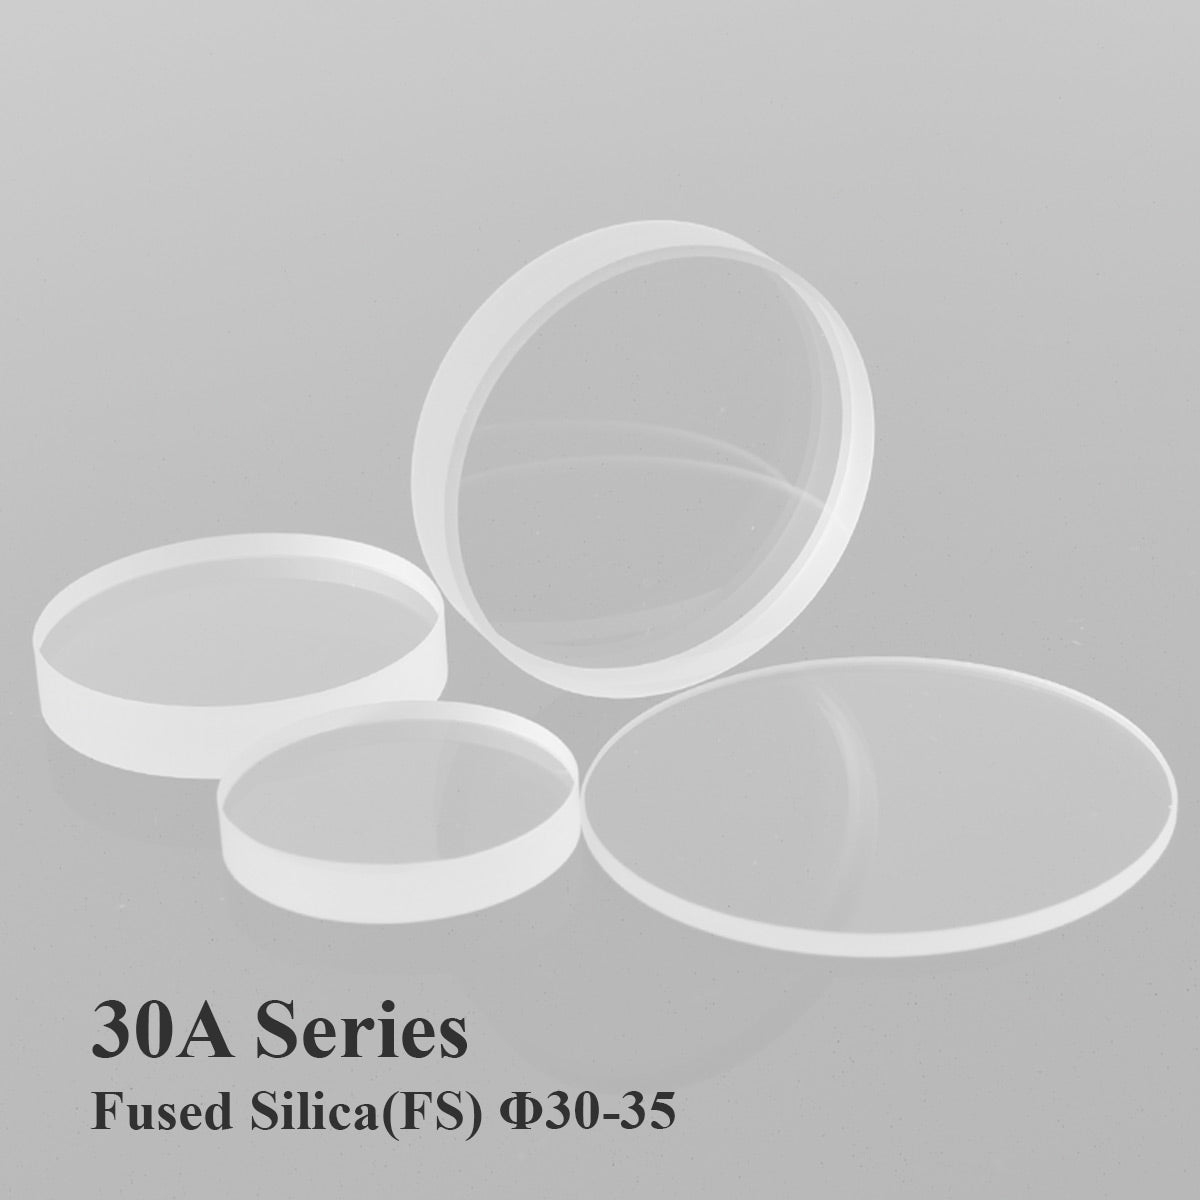 Startnow Lens For Fiber Laser Protection Windows Quartz HANS 30*5 34x5